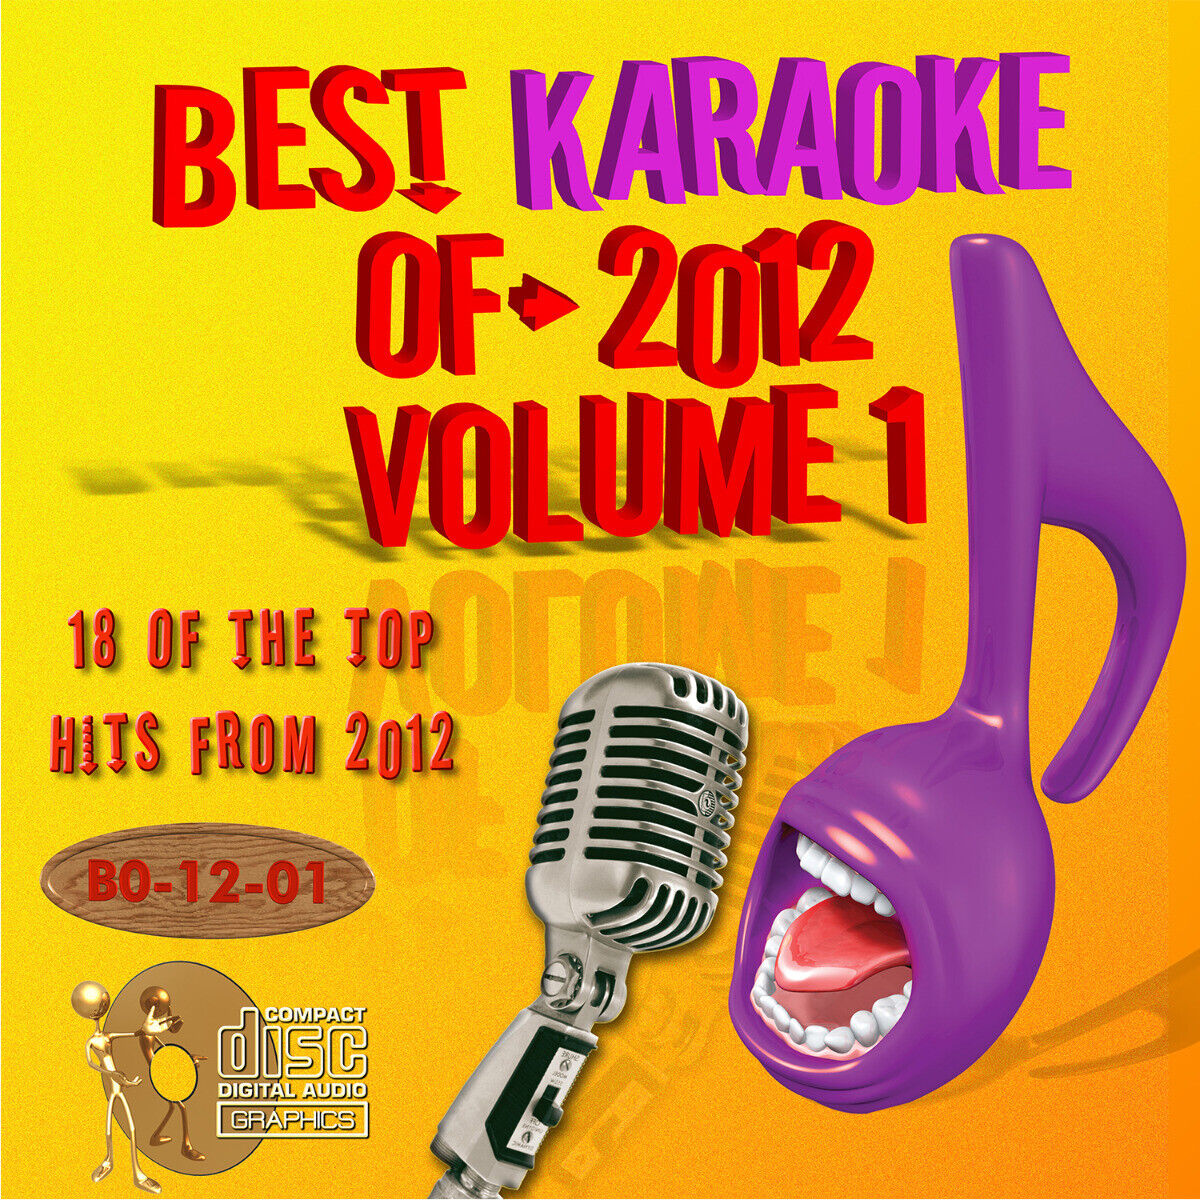 KARAOKE BEST OF 2012 Vol-1 CD+G 18 top COUNTRY+ POP HITS NEW In vinyl w/Print